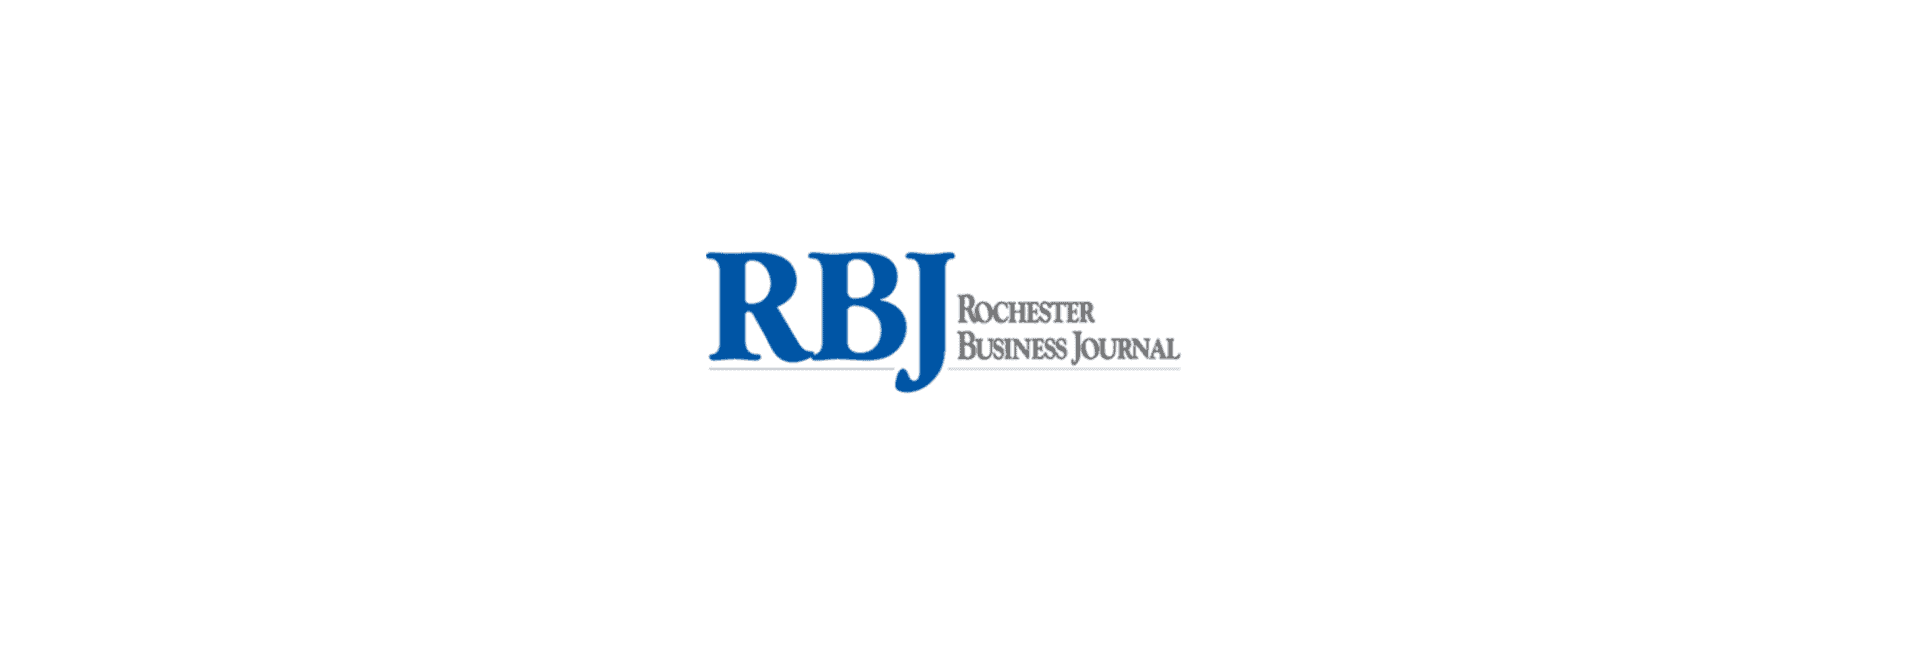 Rochester business journal